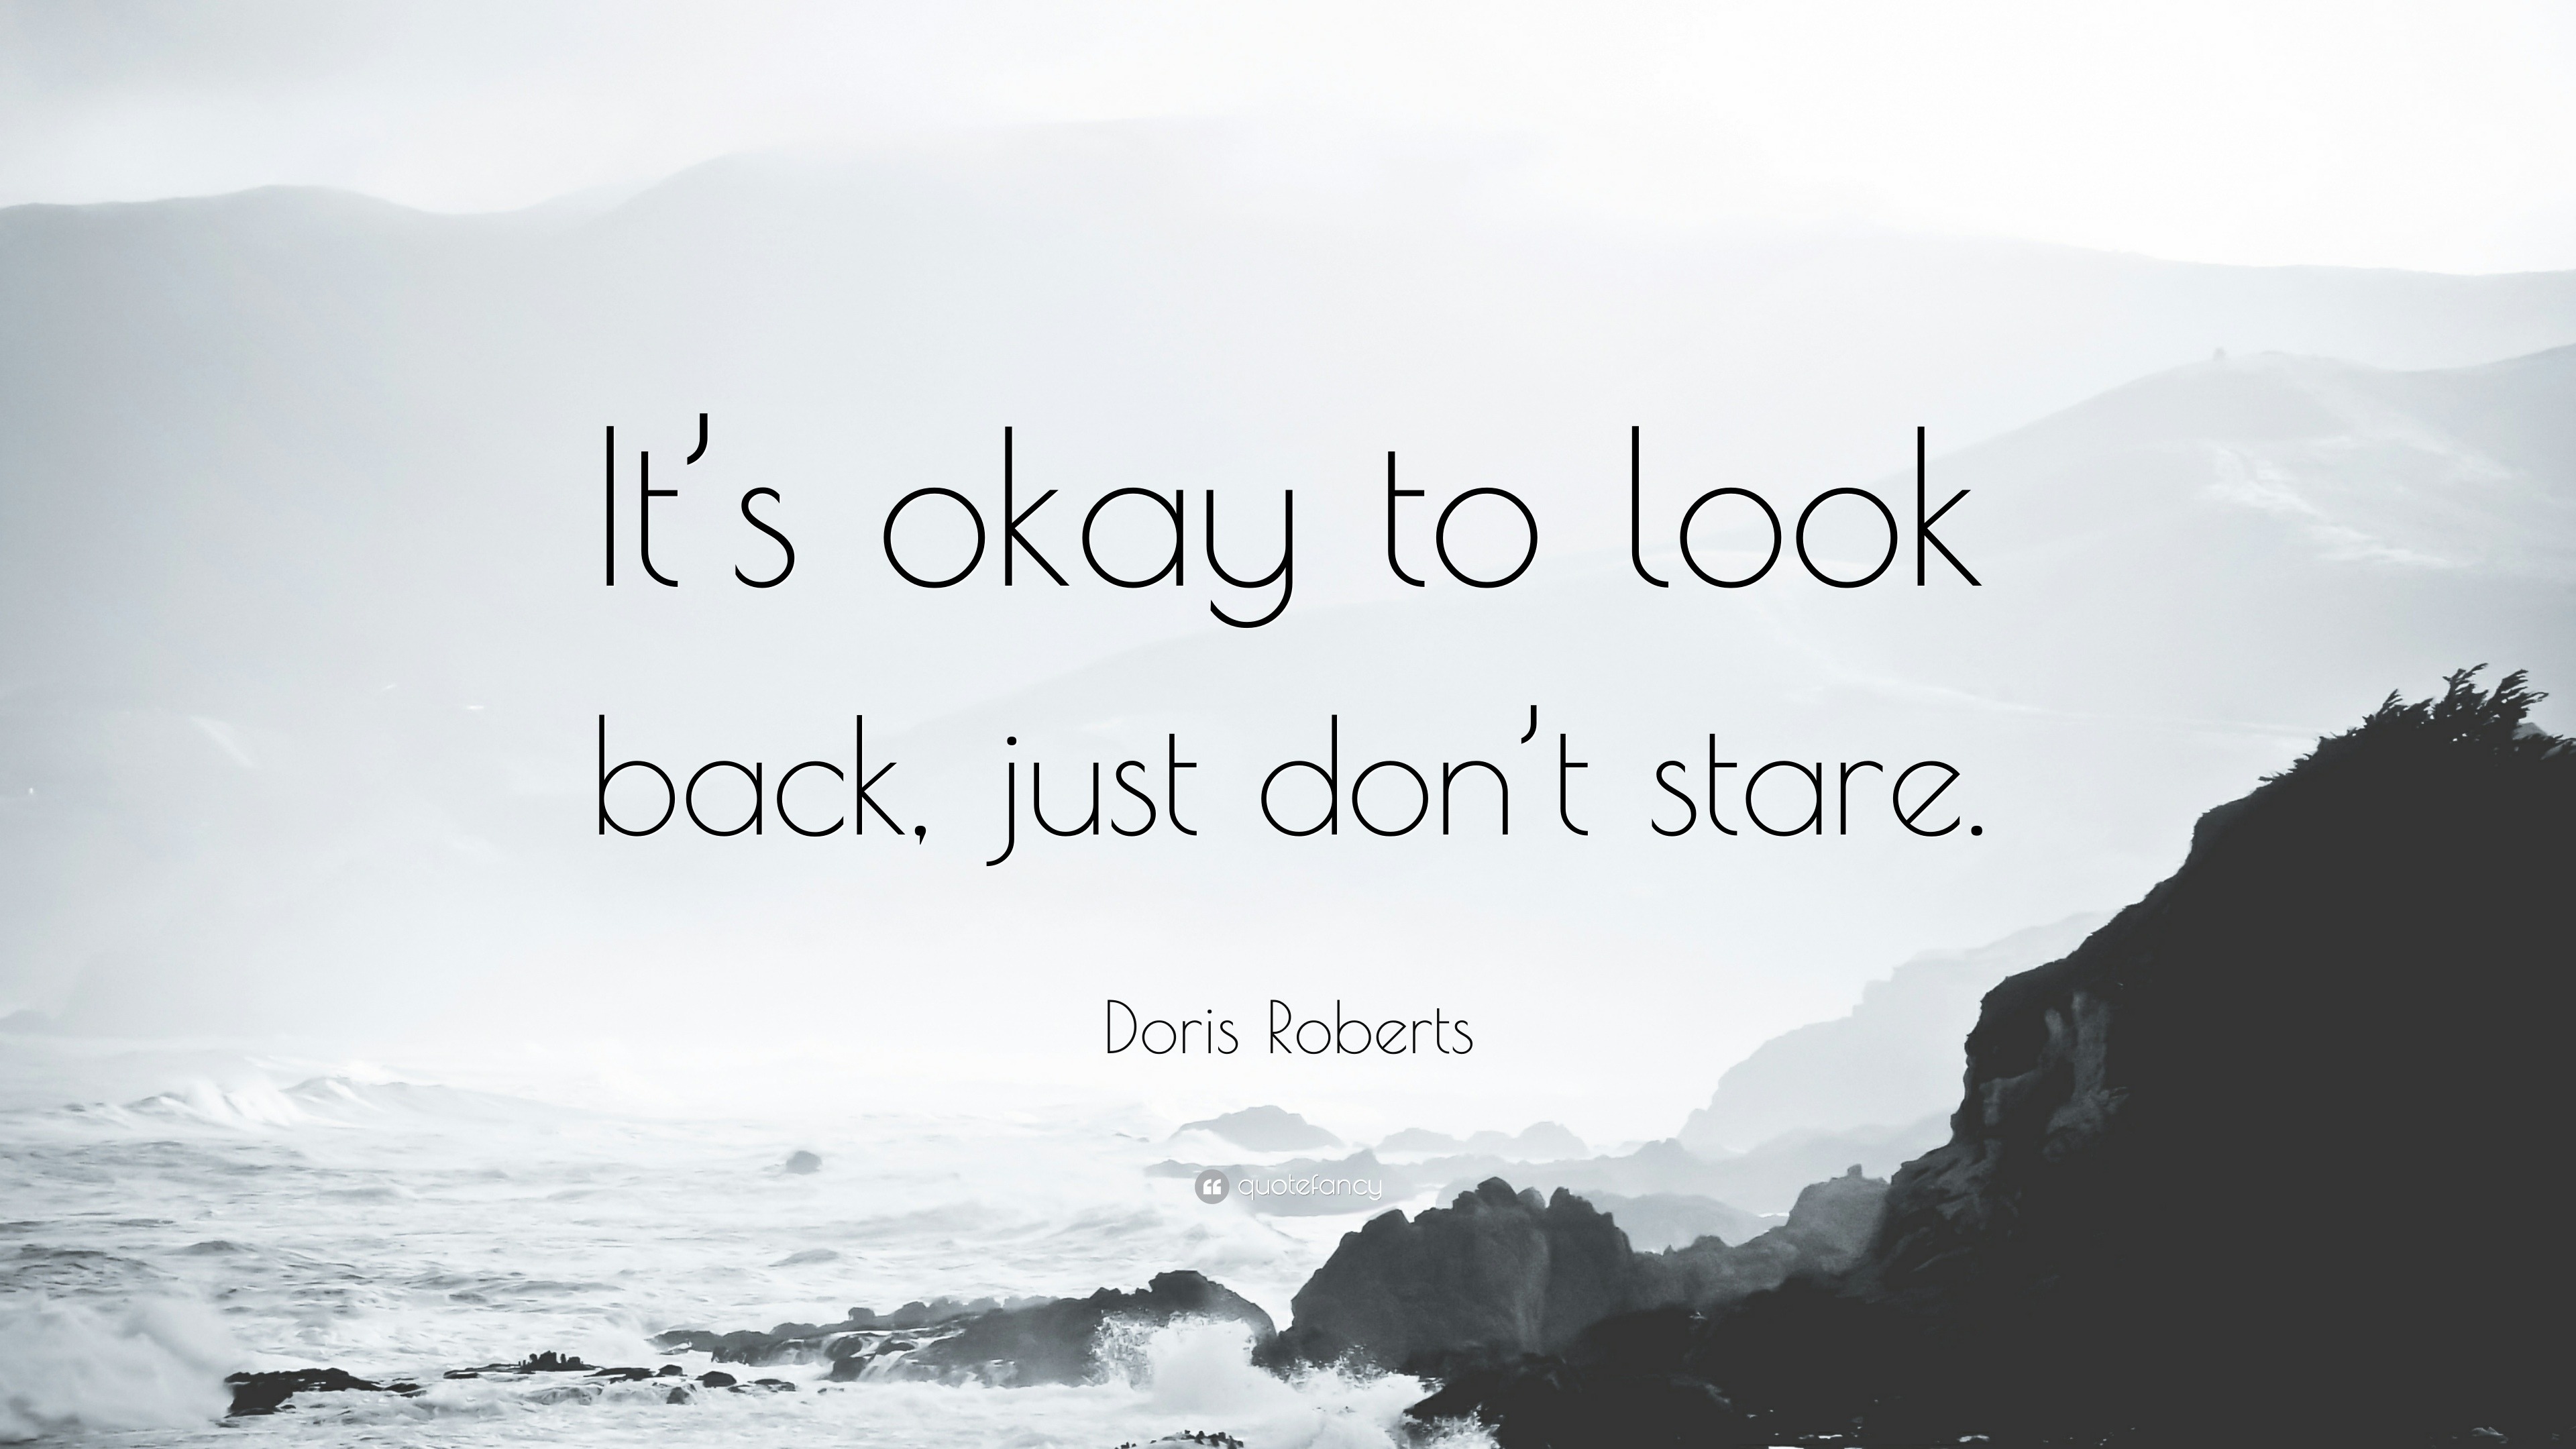 Doris Roberts Quote: “It's okay to look back